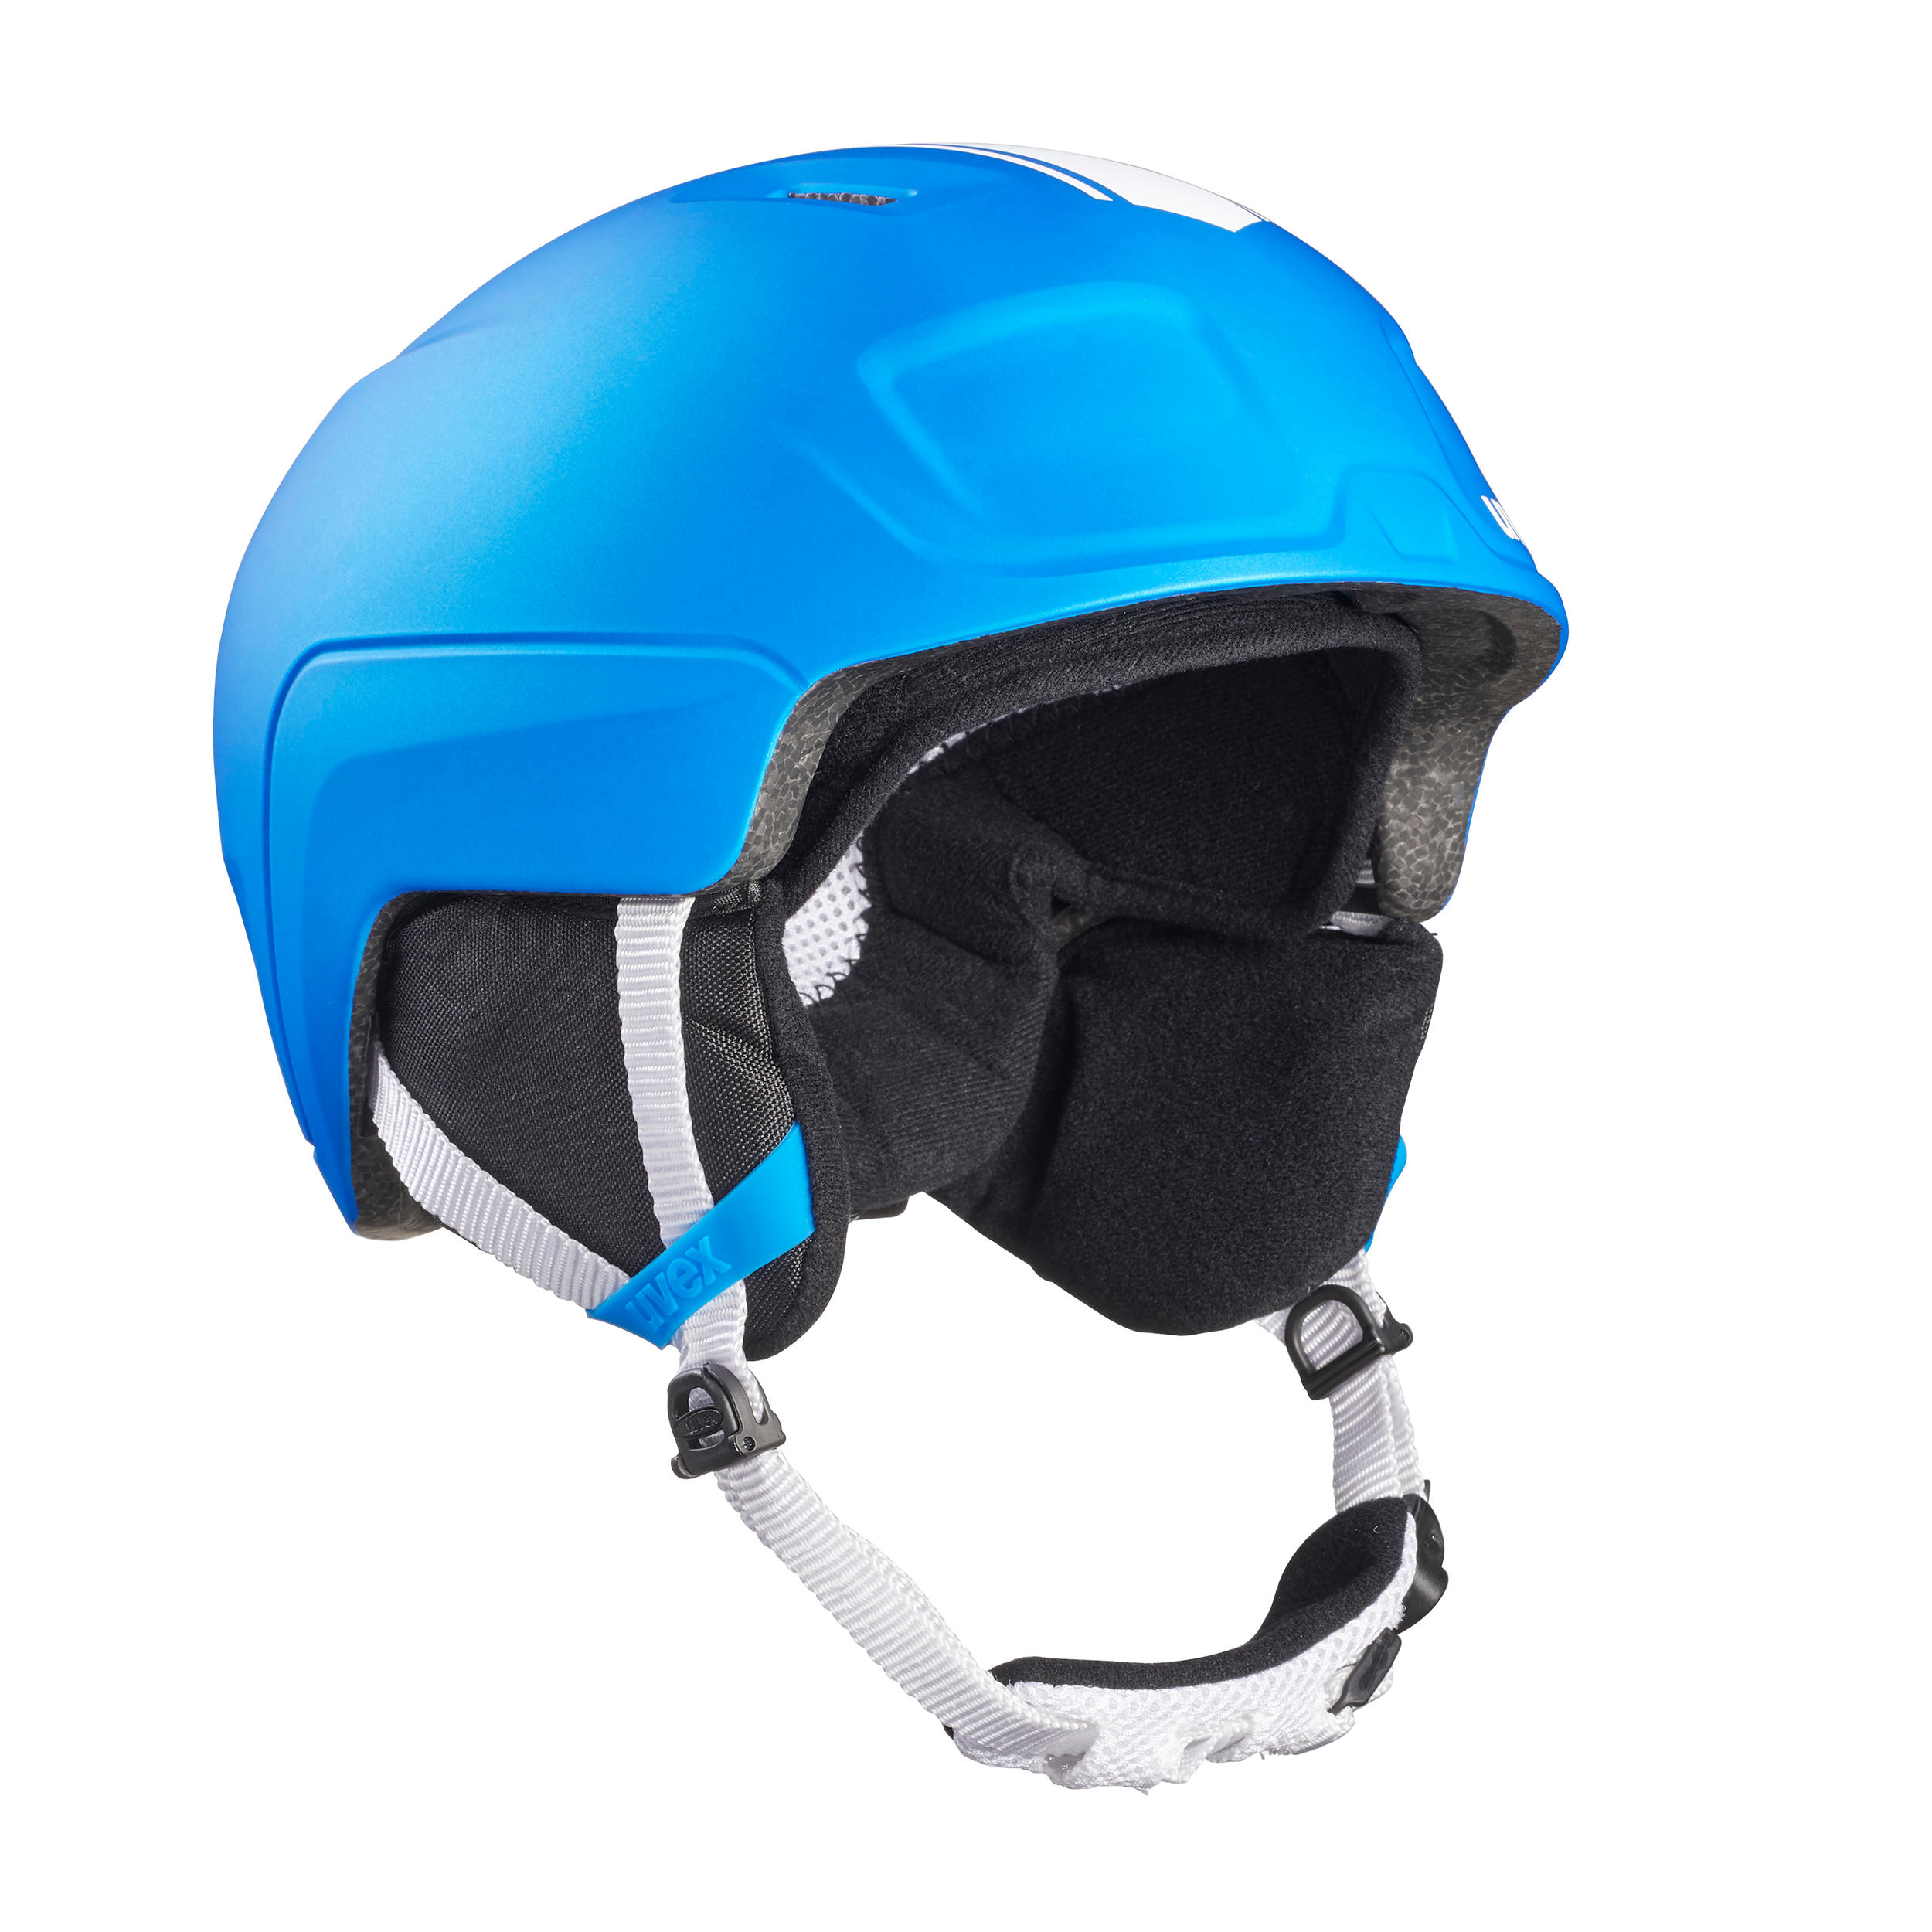 Helmet Pro Race Blue 1/9